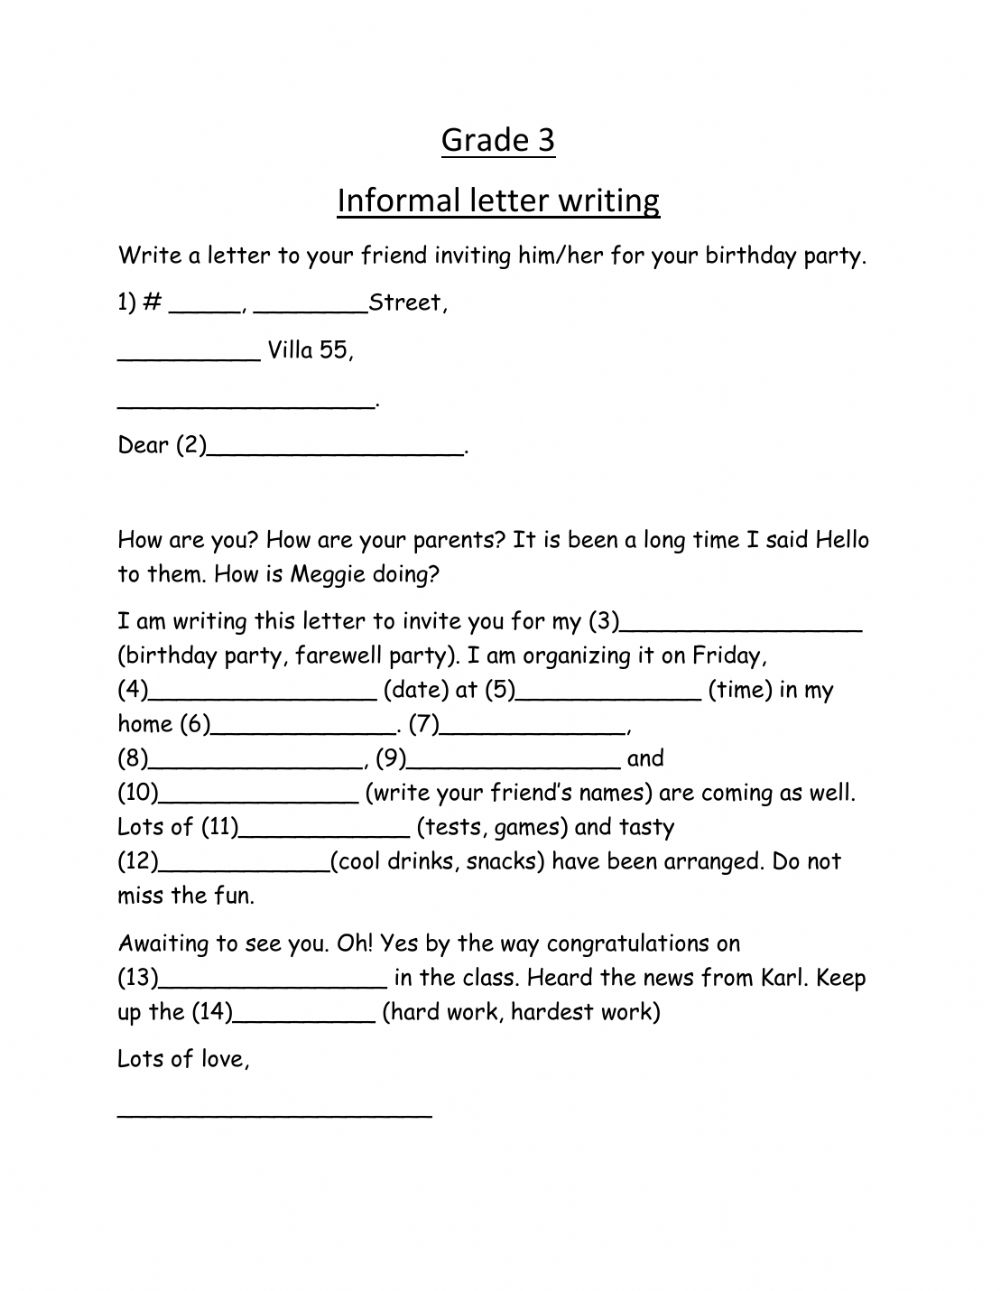 letter-writing-for-grade-4-treasurehresa